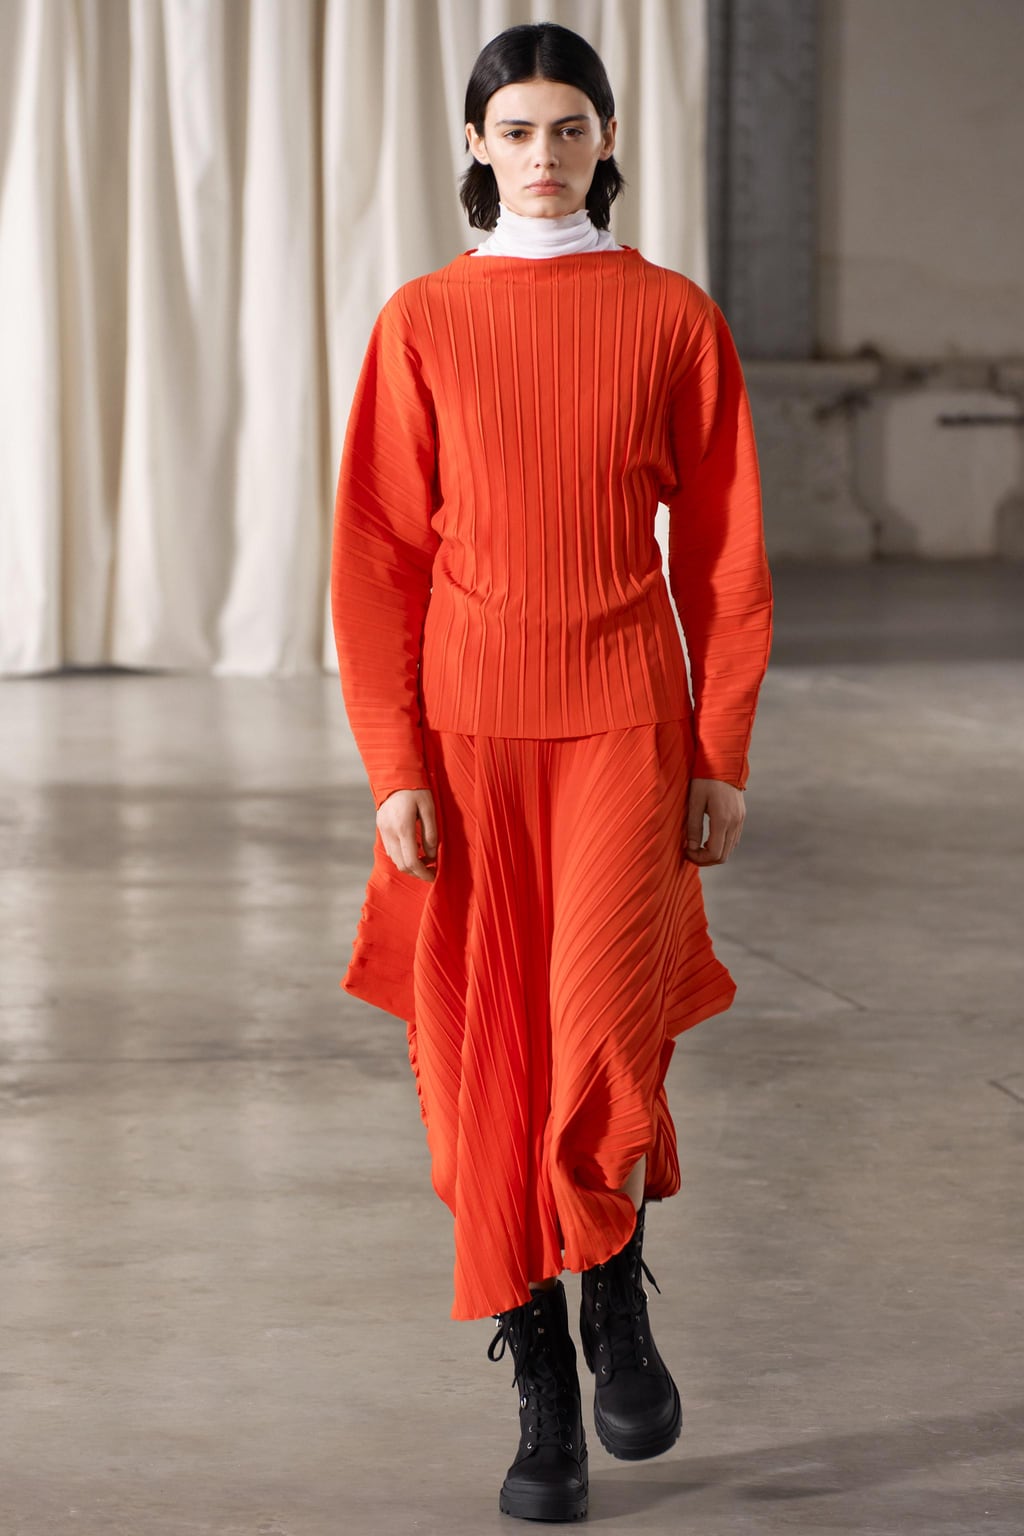 Асимметричная юбка со складками ZARA, красный апельсин ассиметричная плиссированная мини юбка с оборками модная трапециевидная юбка с завышенной талией праздничная стильная юбка для женщин н